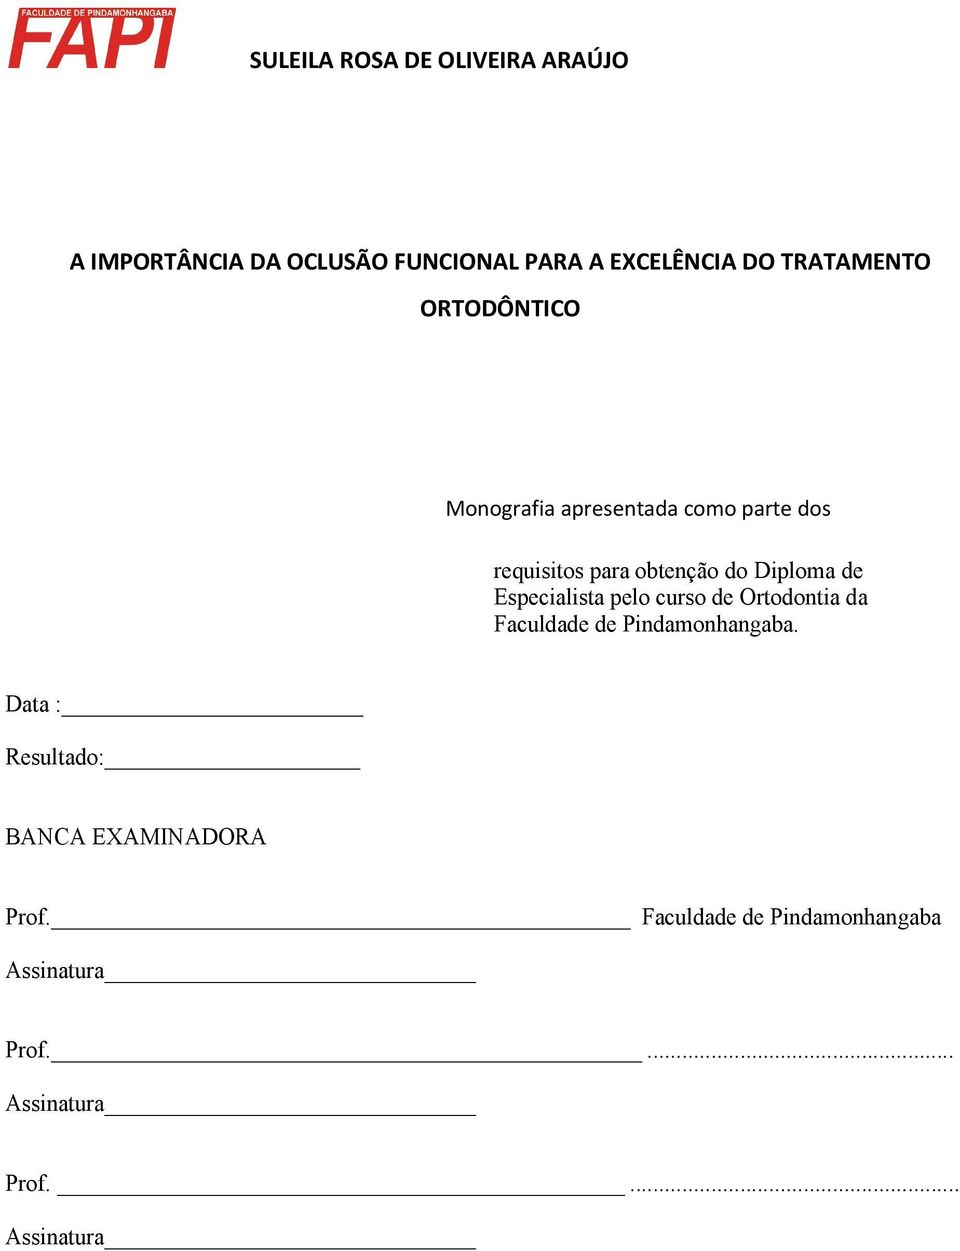 Diploma de Especialista pelo curso de Ortodontia da Faculdade de Pindamonhangaba.